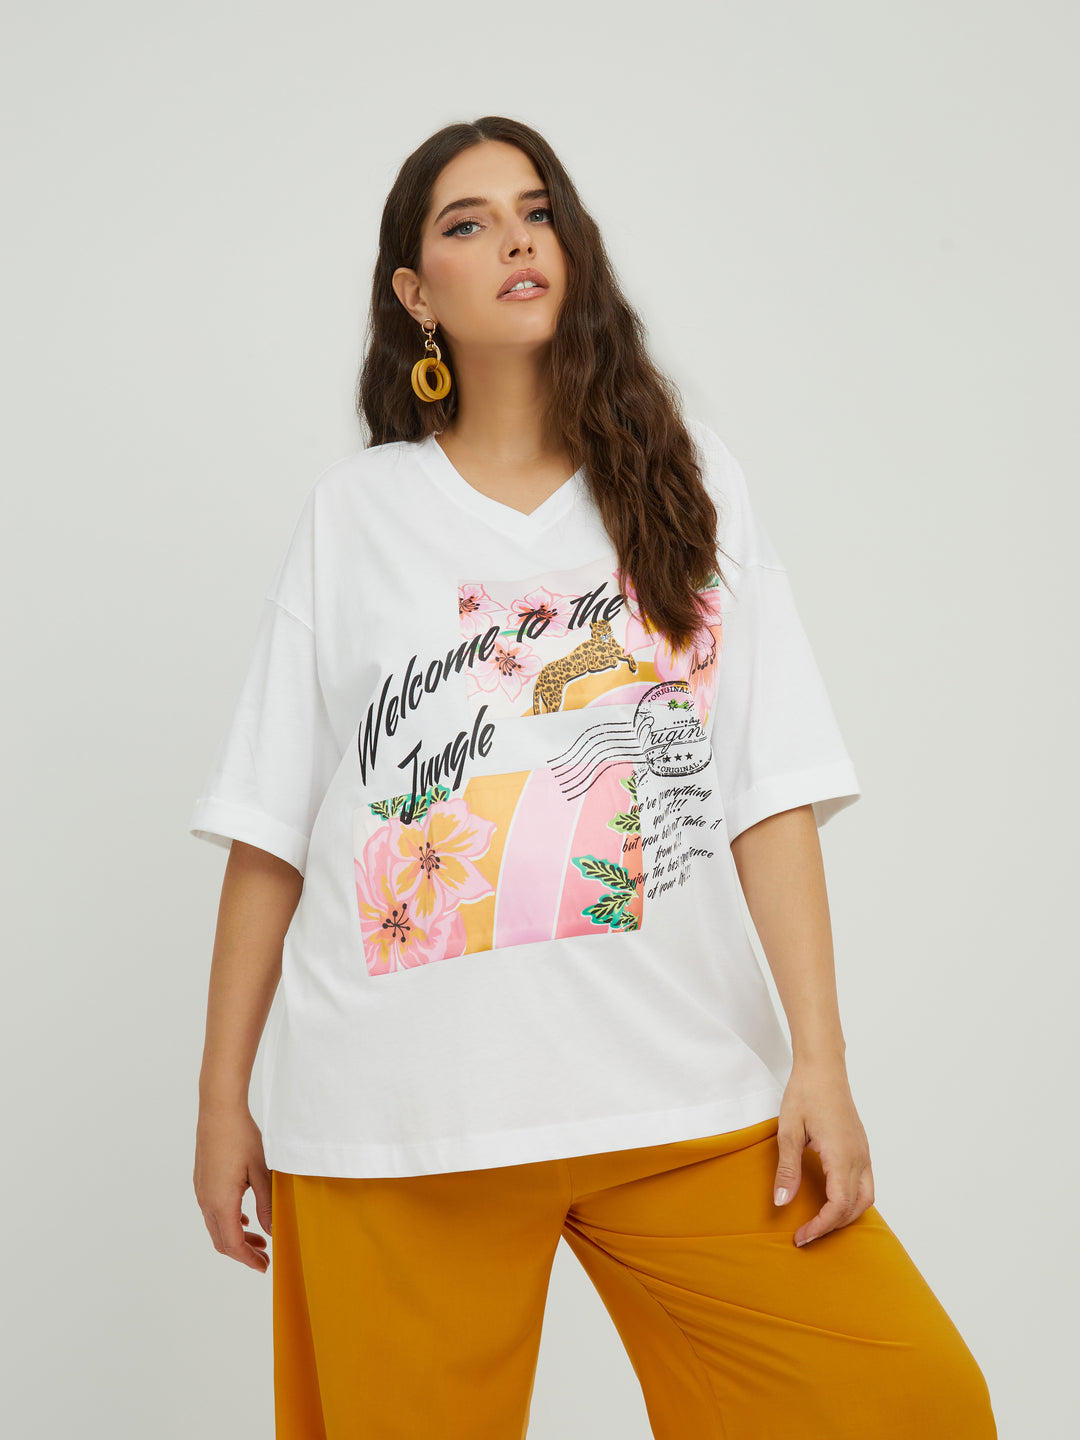 oversized t-shirt met jungle print - mat fashion - 7901,1084 - grote maten - dameskleding - kledingwinkel - herent - leuven